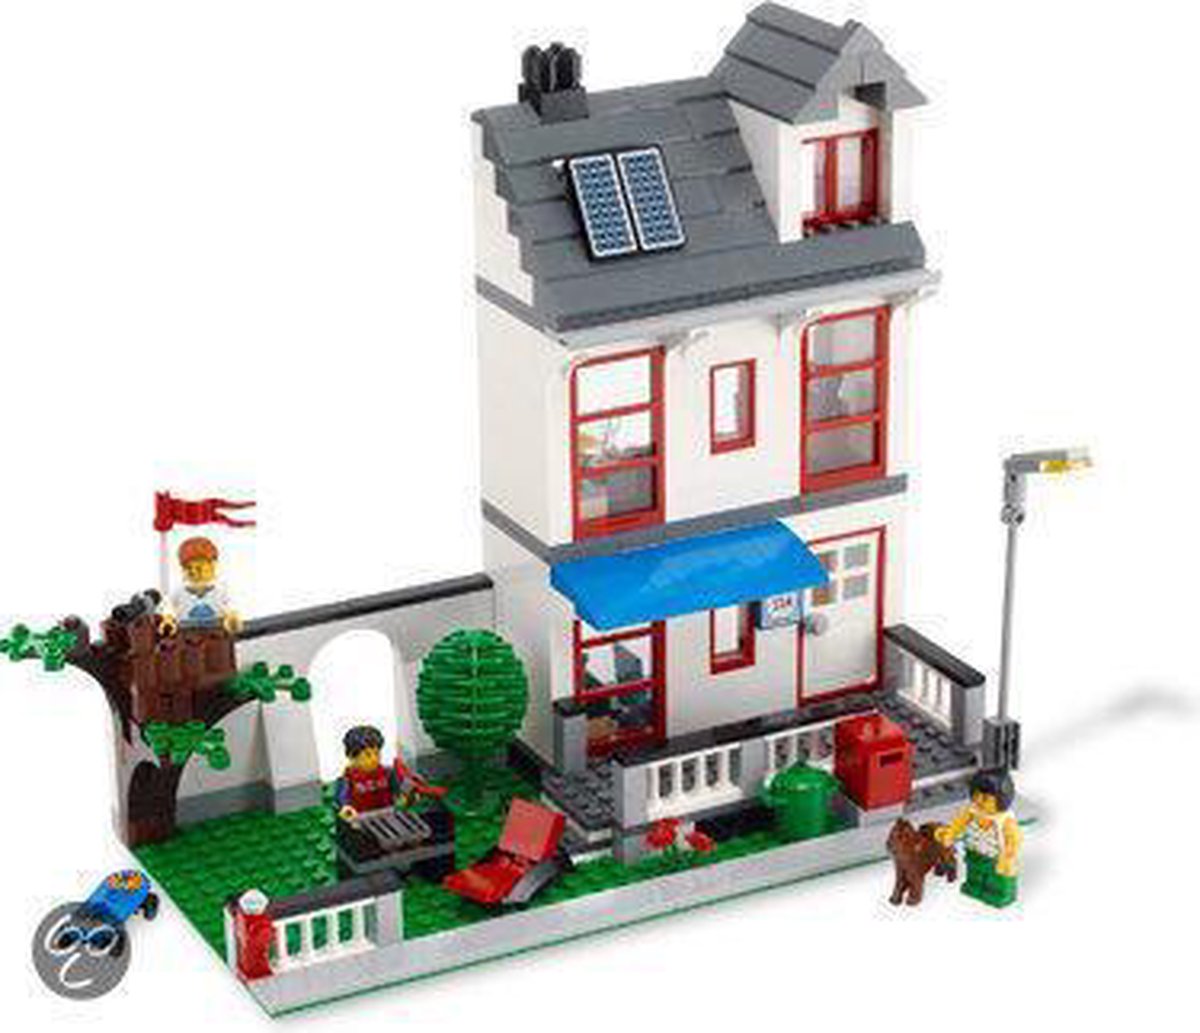 LEGO City Familiehuis - 8403 | bol.com